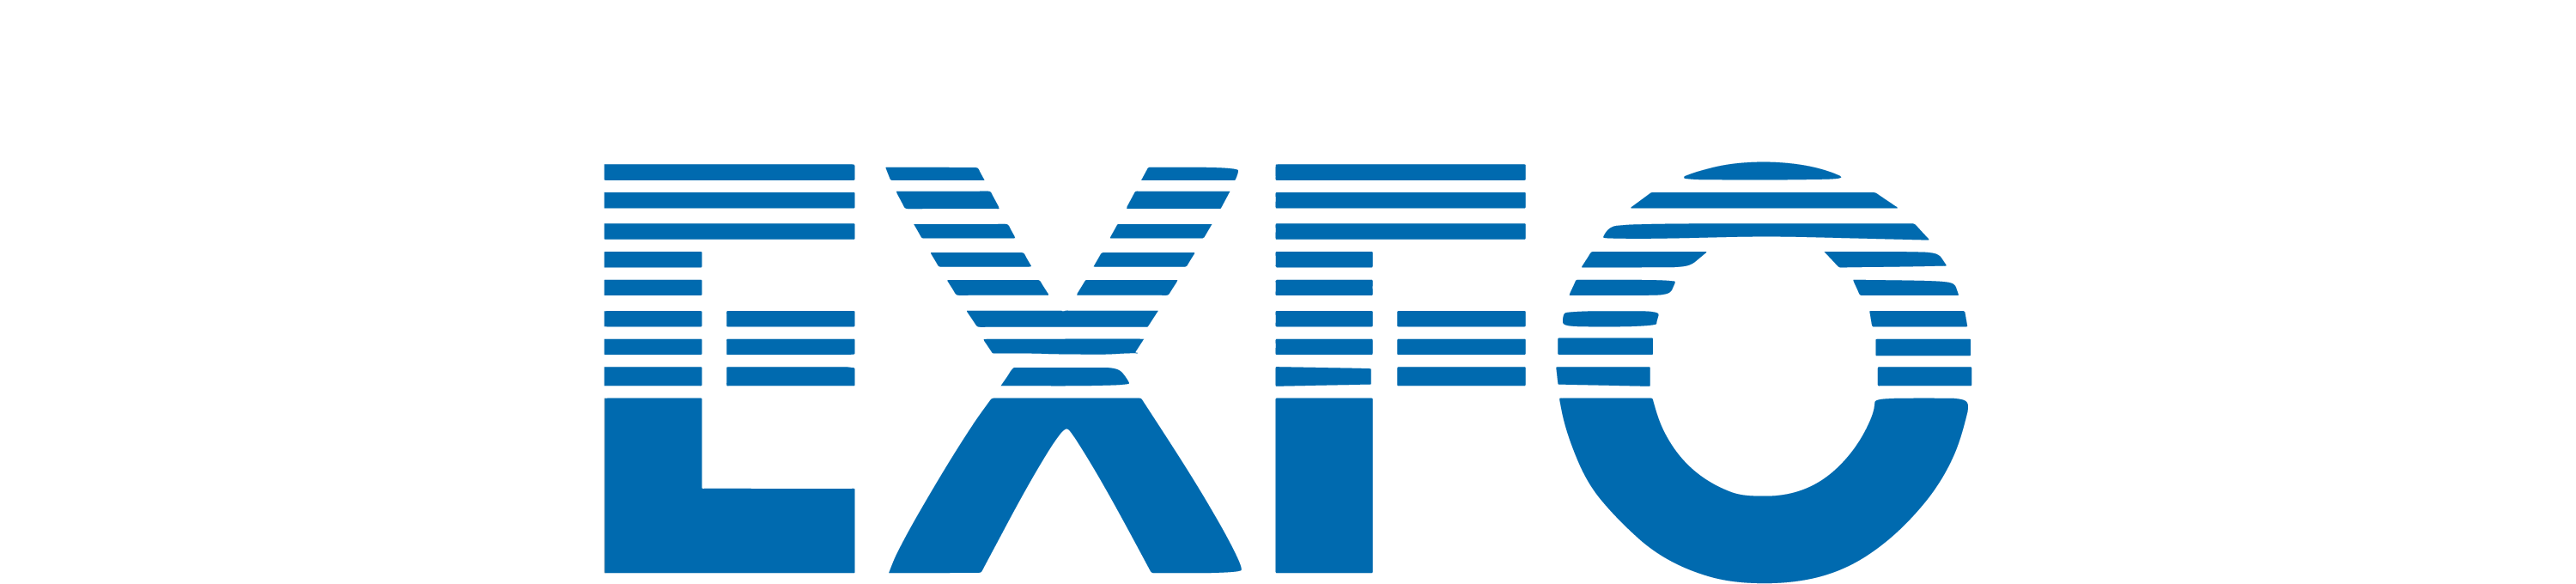 EXFO_Logo_02-01